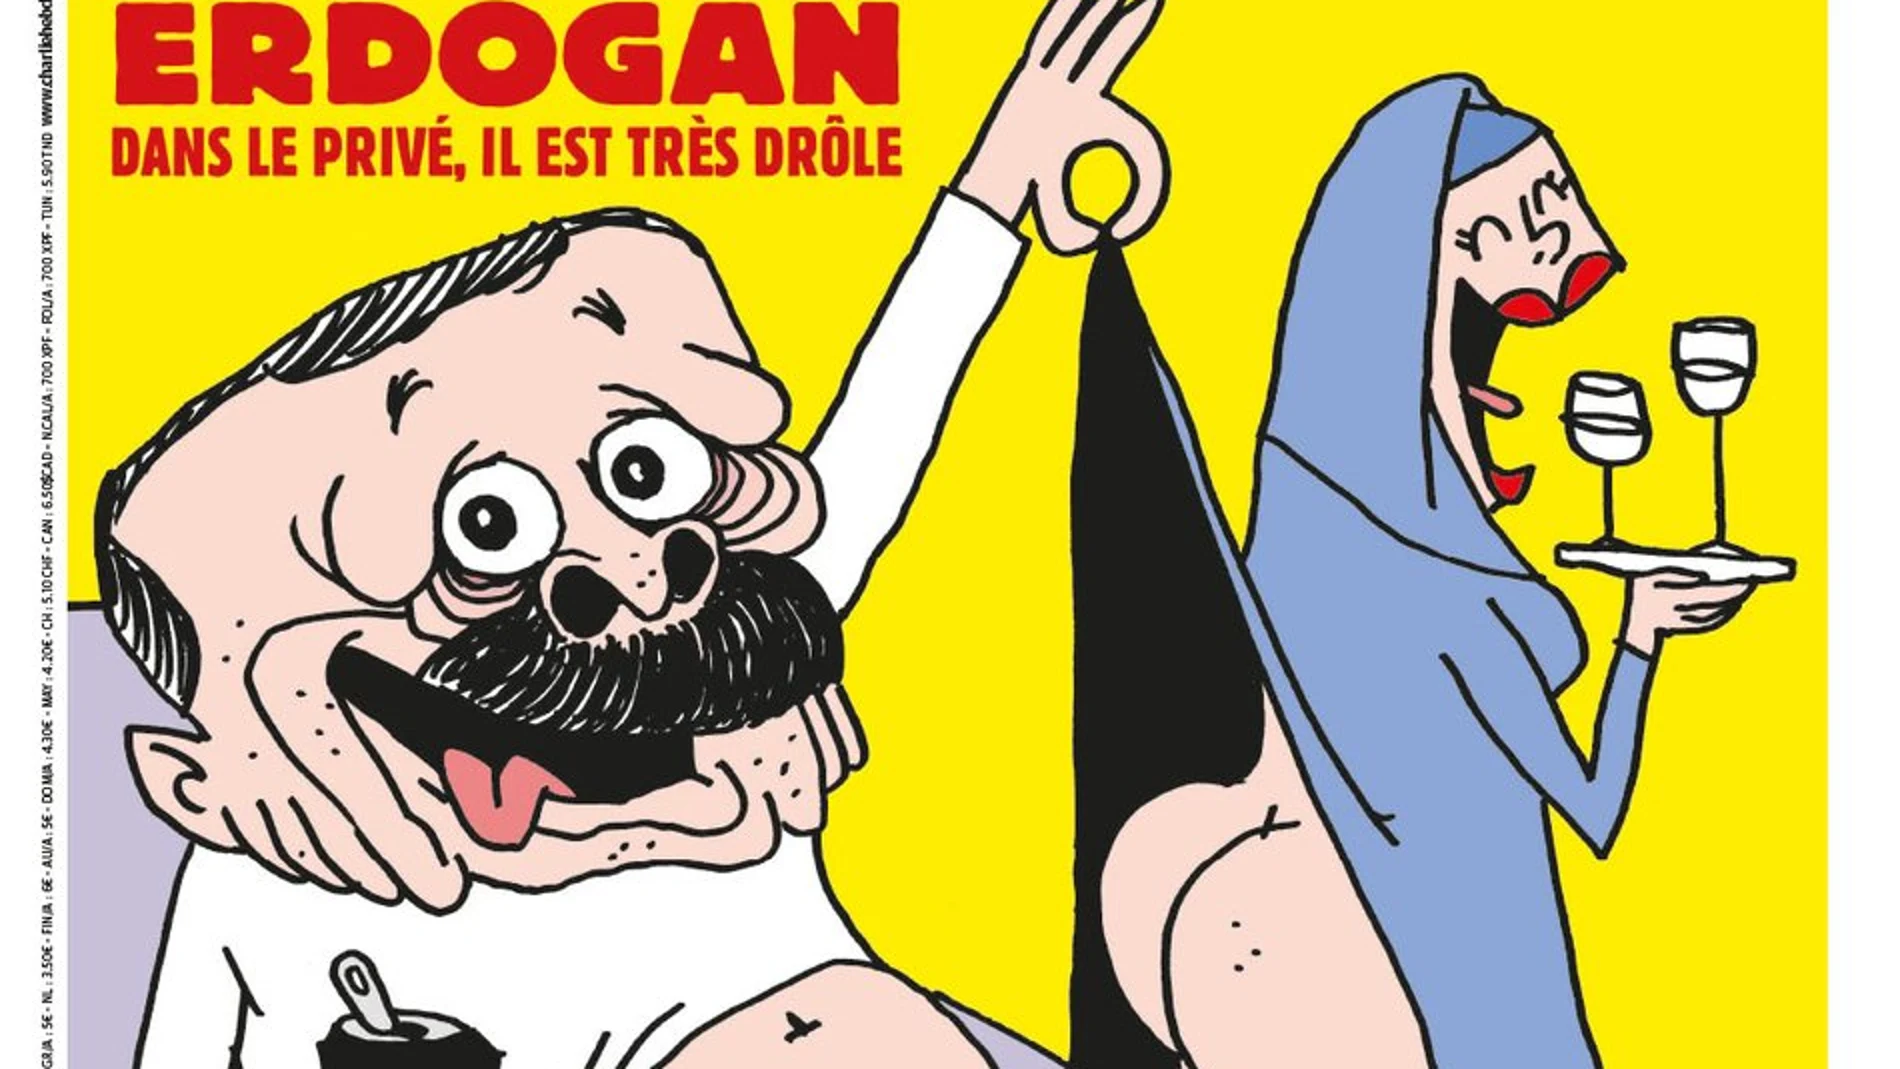 Portada de Charlie Hebdo con Erdogan en calzoncillos